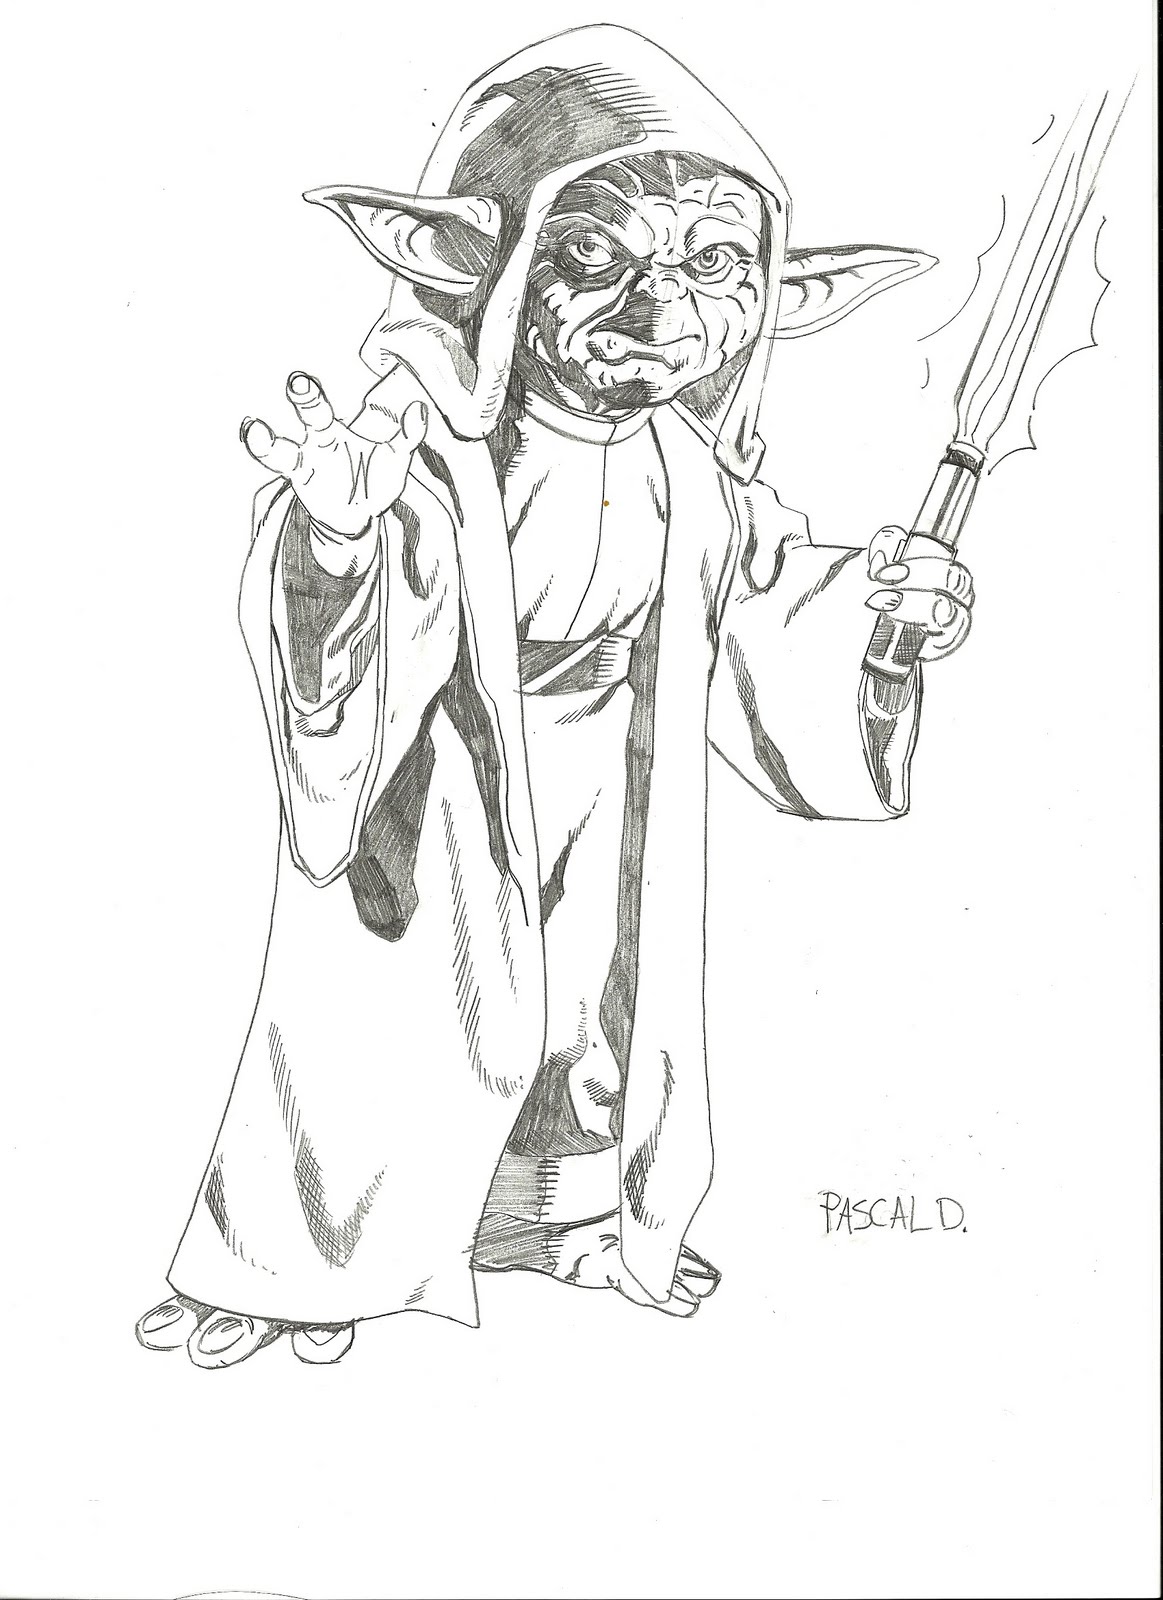 Master Yoda Images